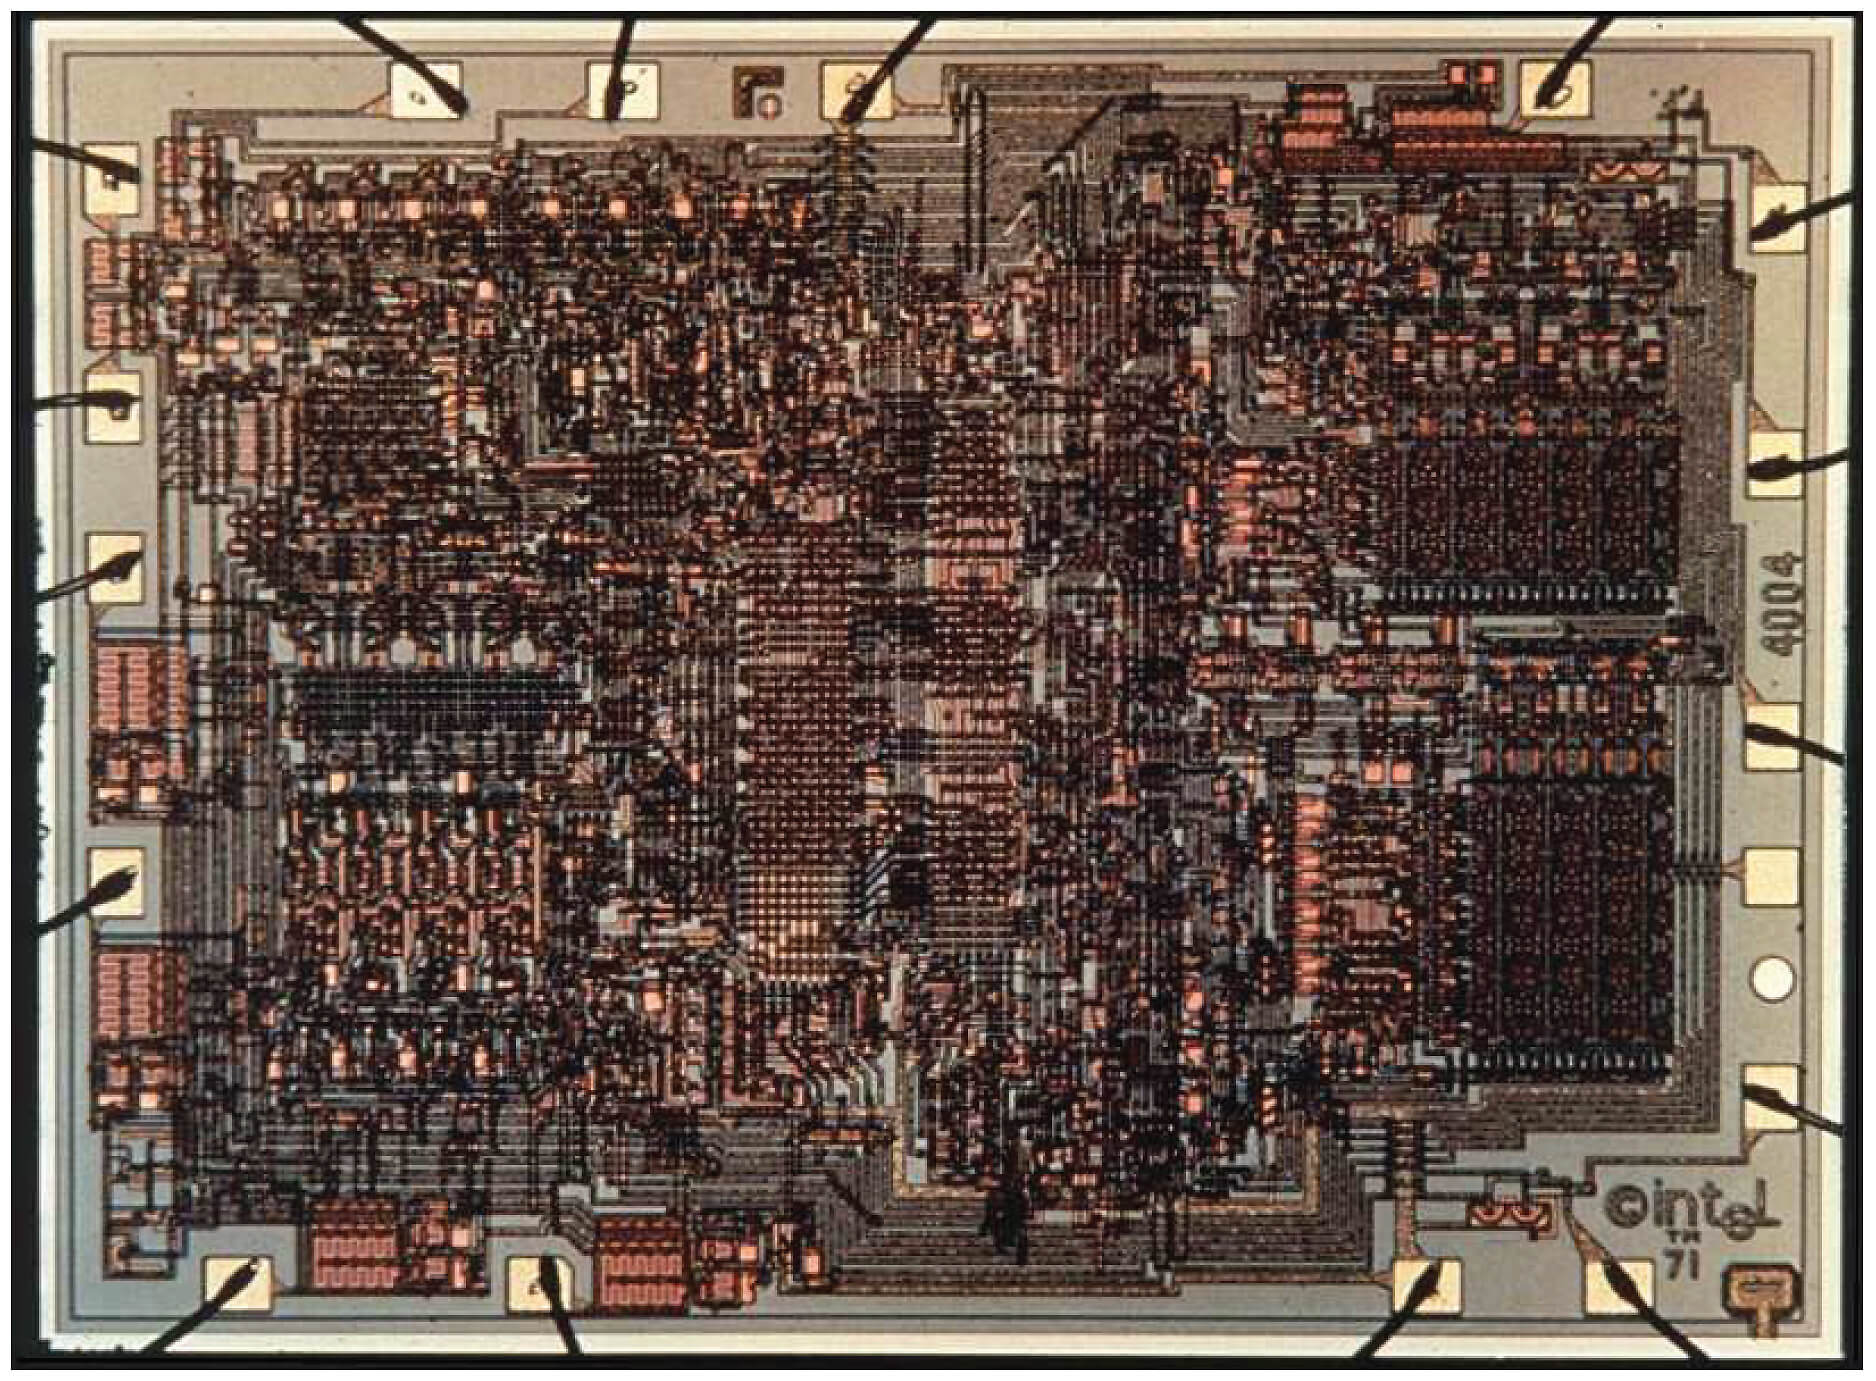 Первый интел. I4004 процессор. Первый микропроцессор Intel 4004 1971. Первый процессор Intel 4004. Кристалл Intel 4004.